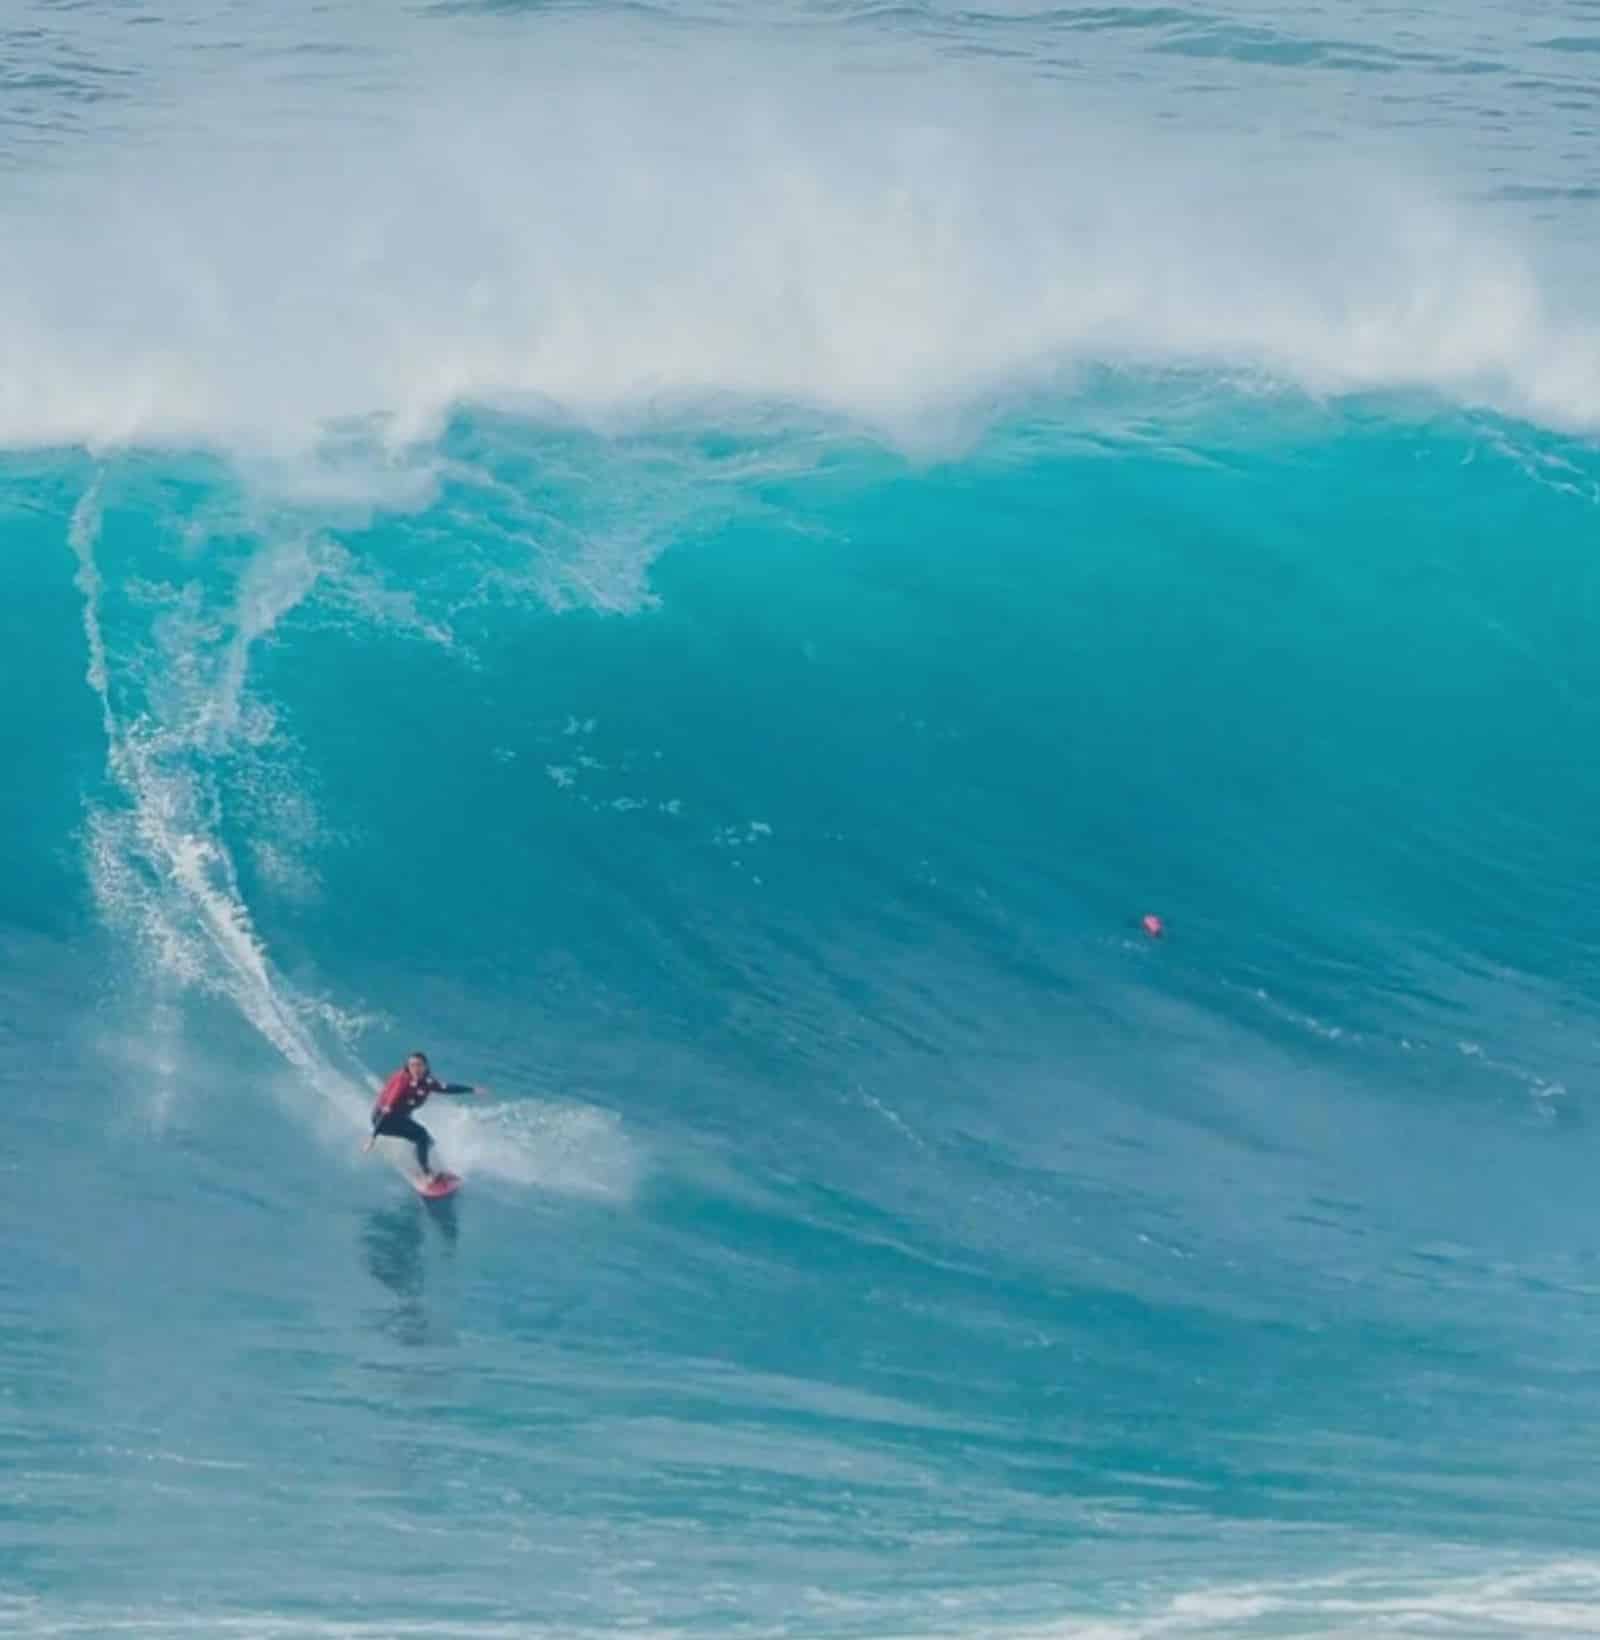 Shapers-Club- Surfeur équipé pour le surf, chevauchant une grande vague dans l'océan. -surfshop-surfboard